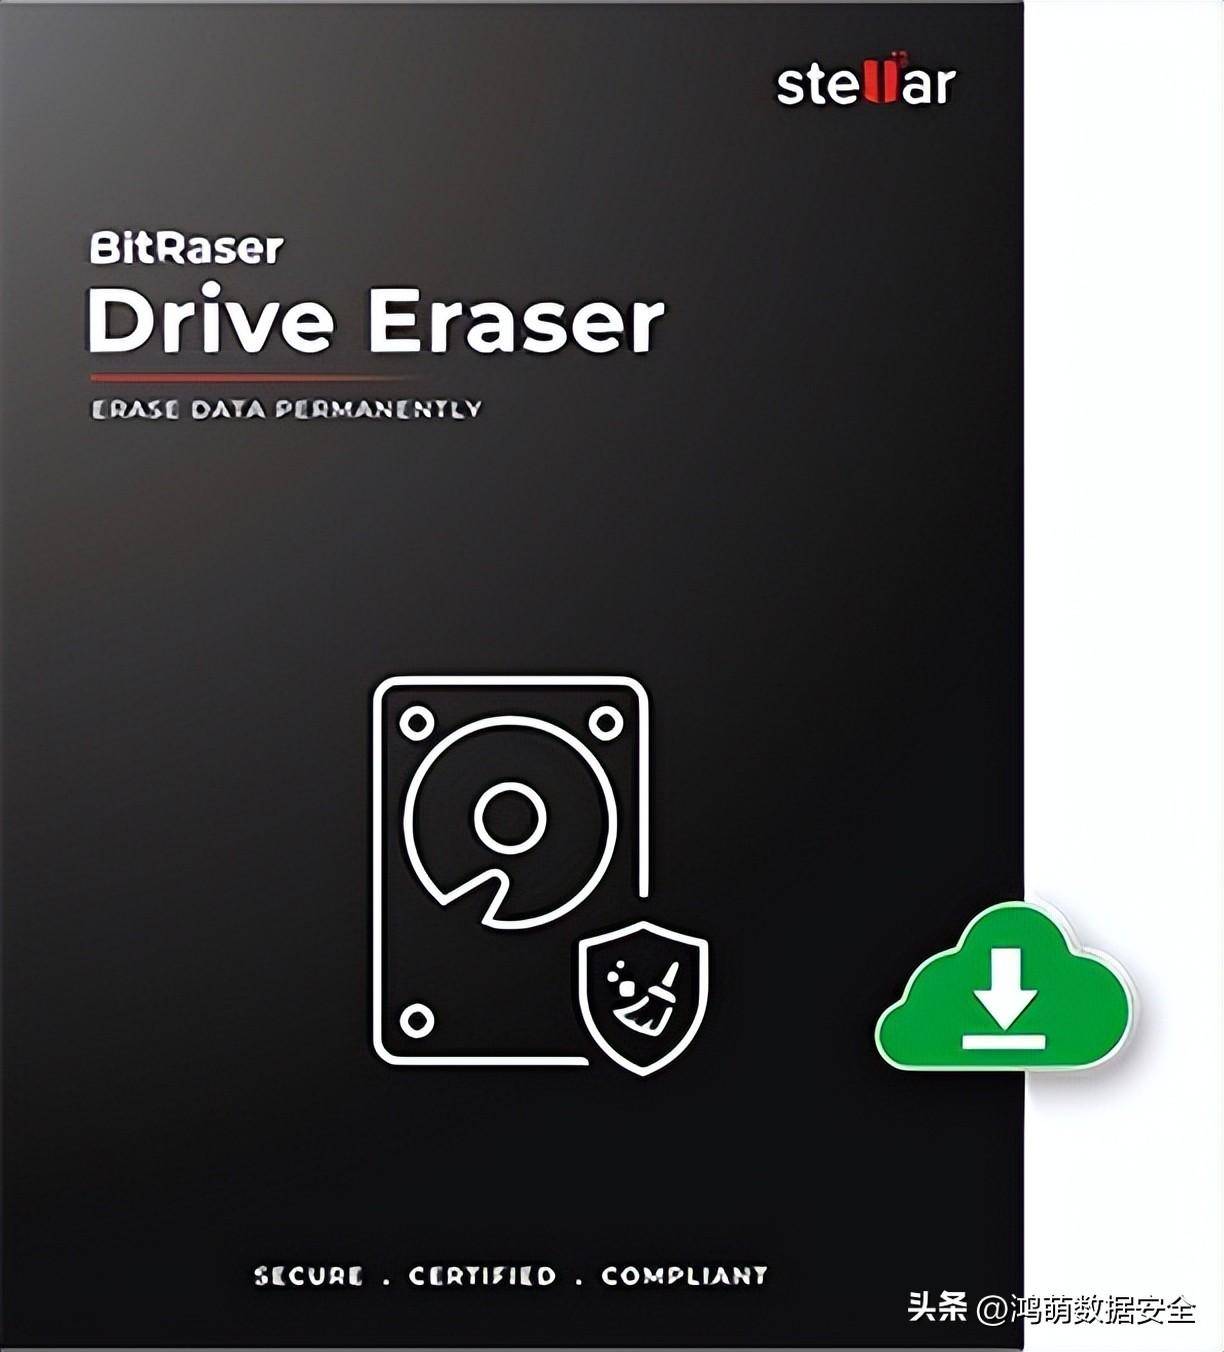 正版皇冠信用盘代理_Stellar BitRaser Drive Eraser正版皇冠信用盘代理，基于云的高扩展性数据擦除软件